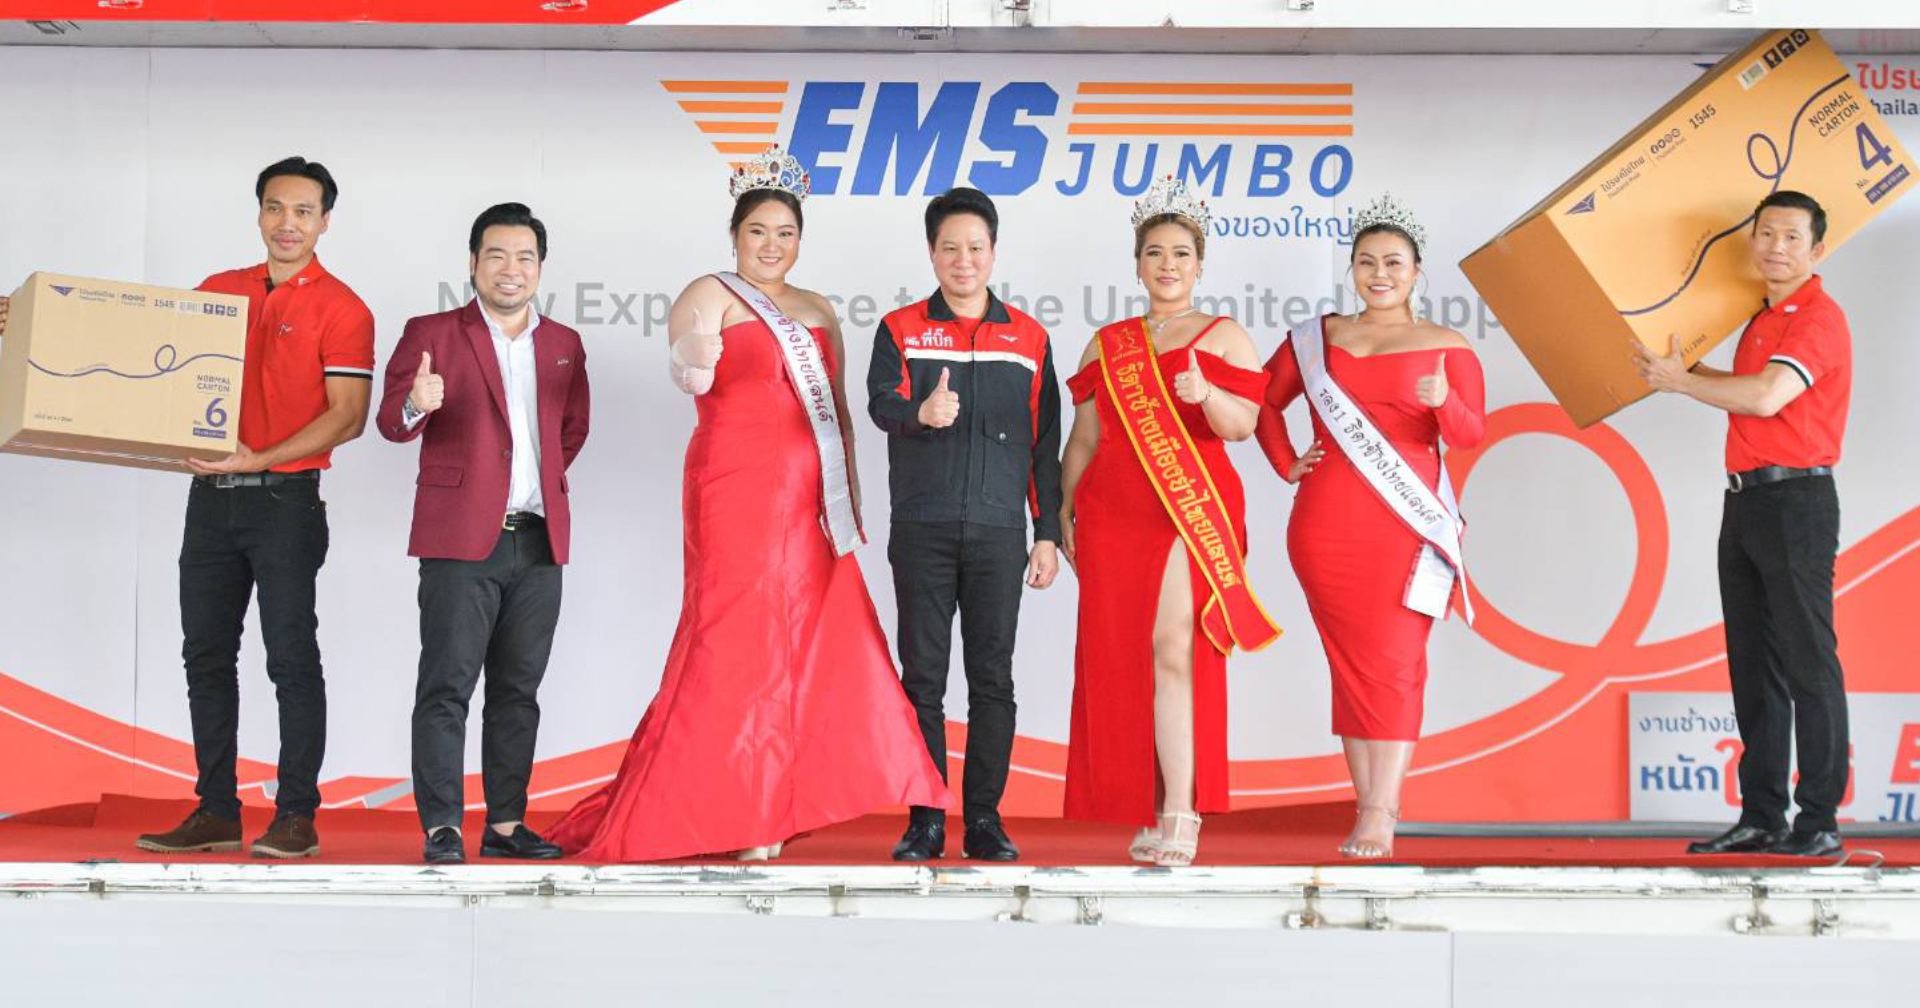 ไปรษณีย์ไทย เปิดตัว EMS JUMBO ส่งด่วนของหนัก ของใหญ่ จุใจ 200 กก. แม้แต่มอเตอร์ไซค์ก็ยังส่ง!